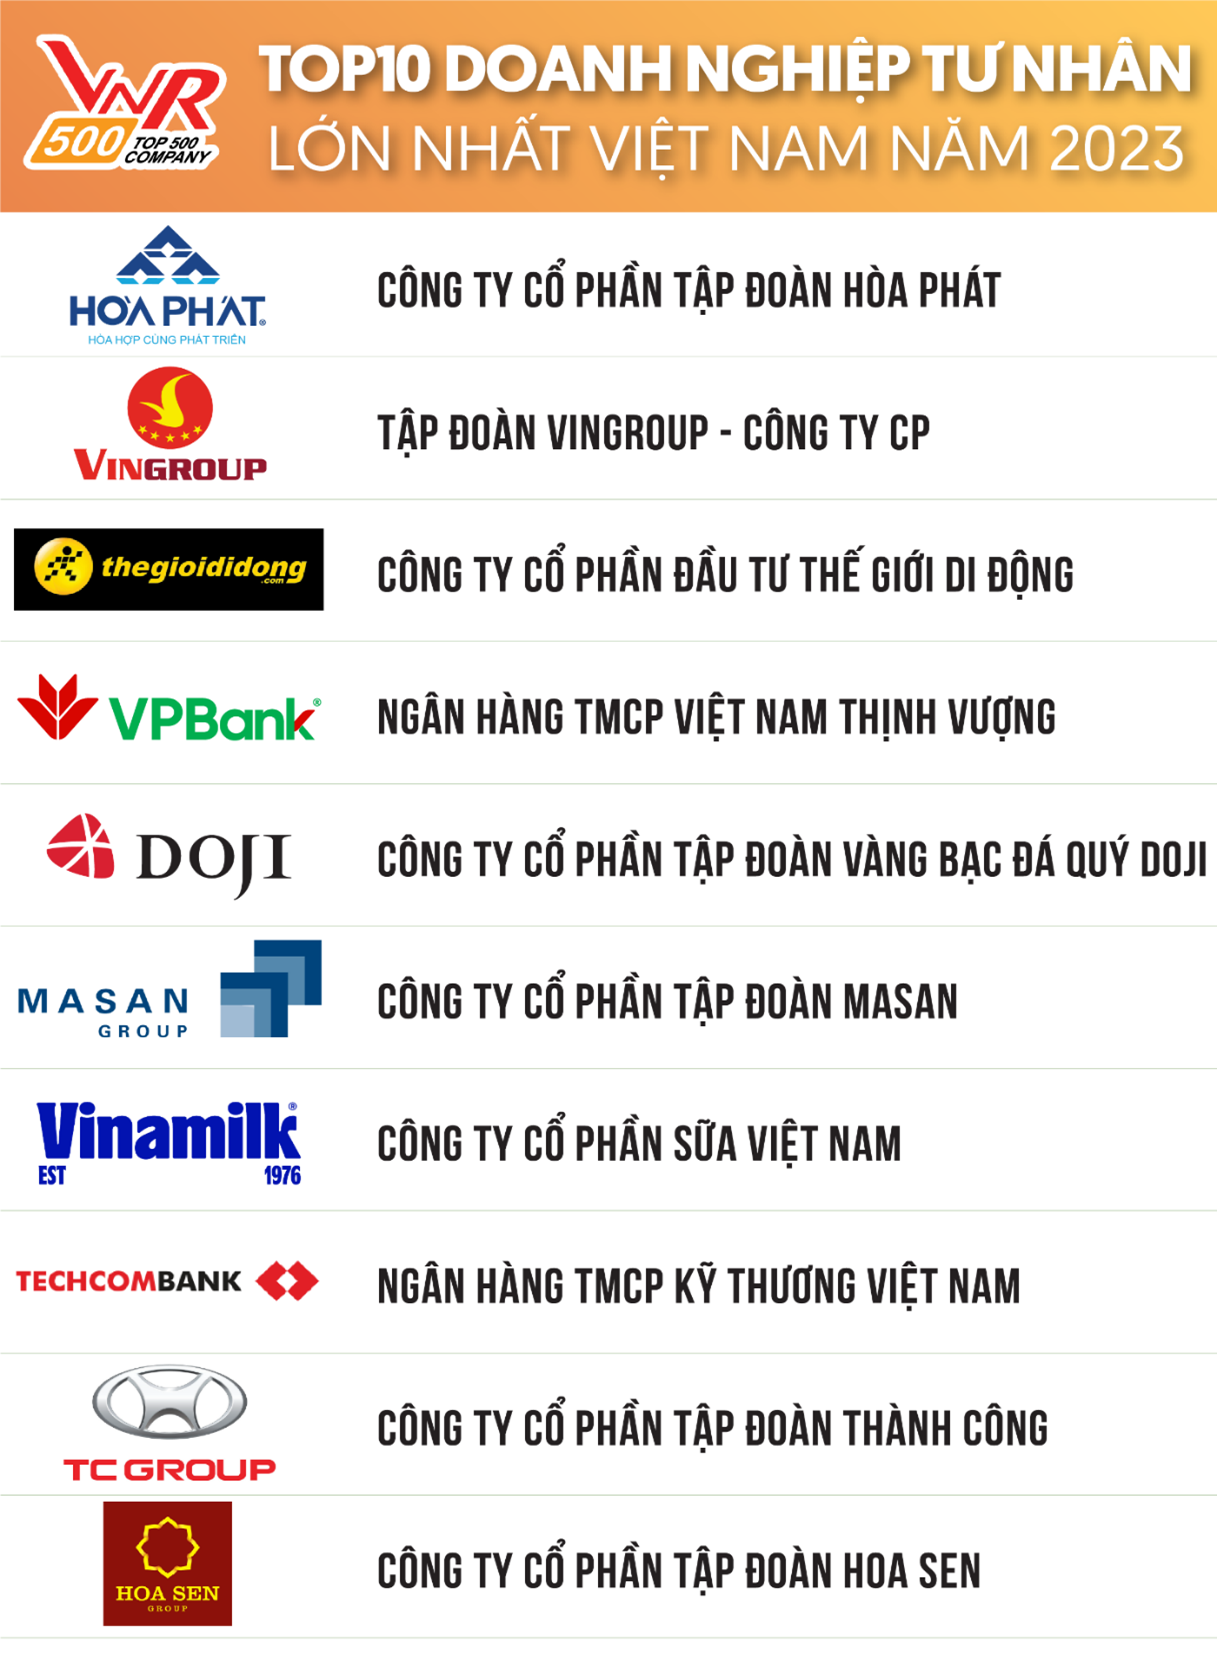 Top 10 Doanh nghiệp tư nhân lớn nhất Việt Nam năm 2023